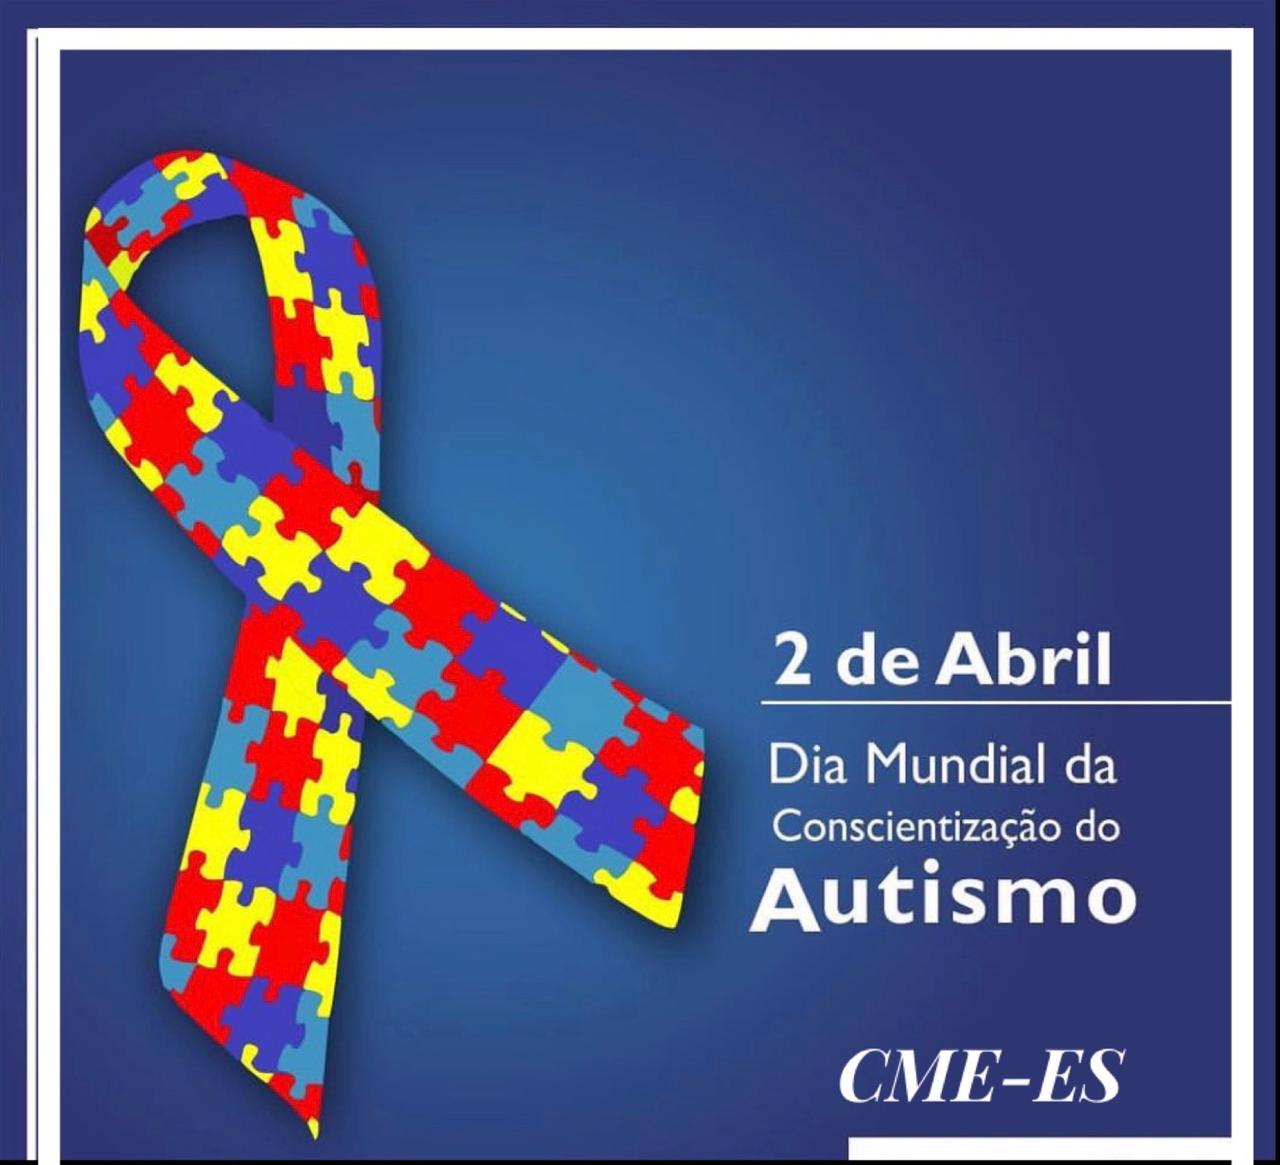 02 de Abril Dia Mundial de Conscientização do Autismo